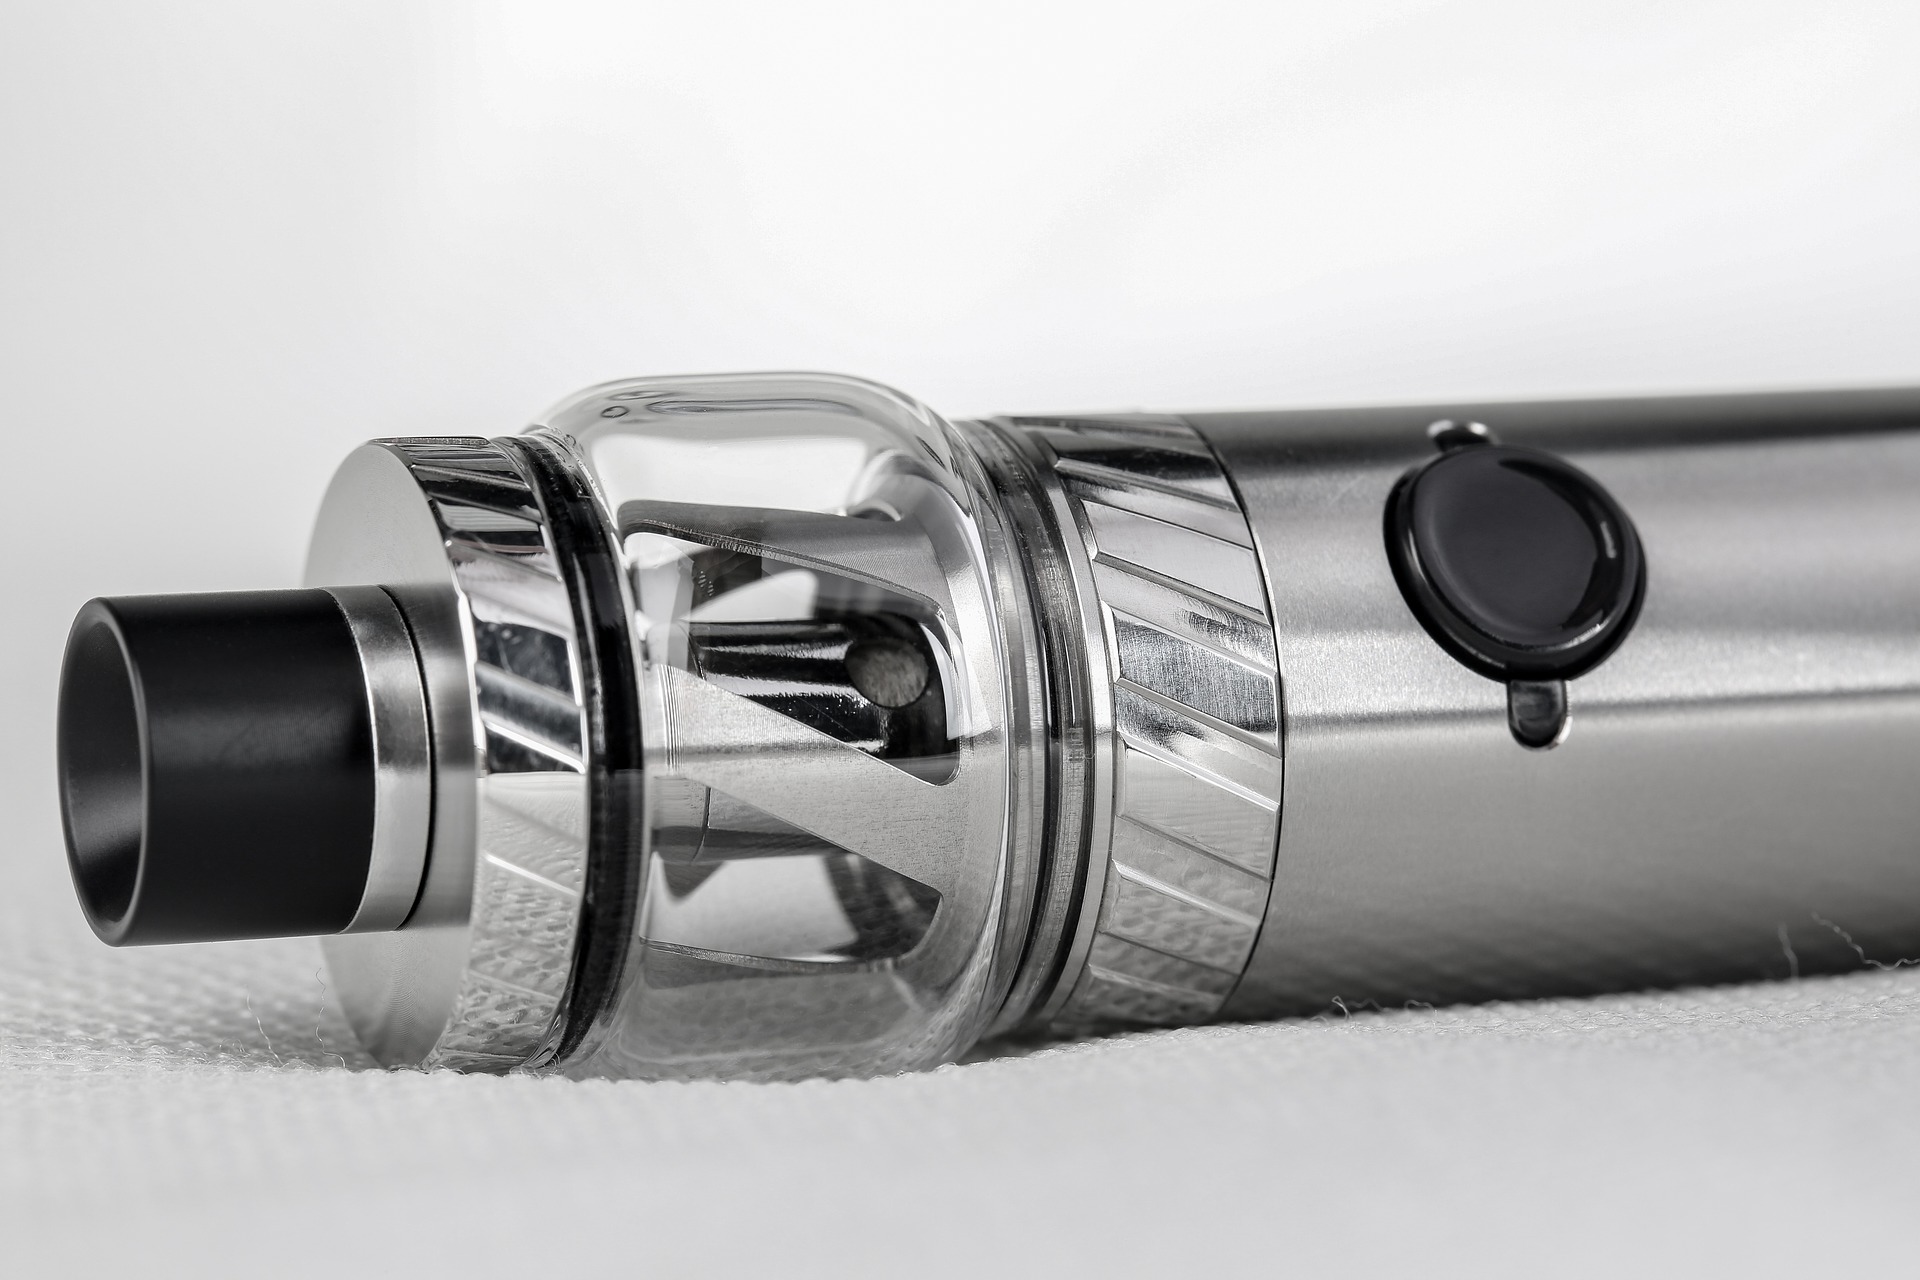 A close-up photograph of a metal vaporizer or vape-pen